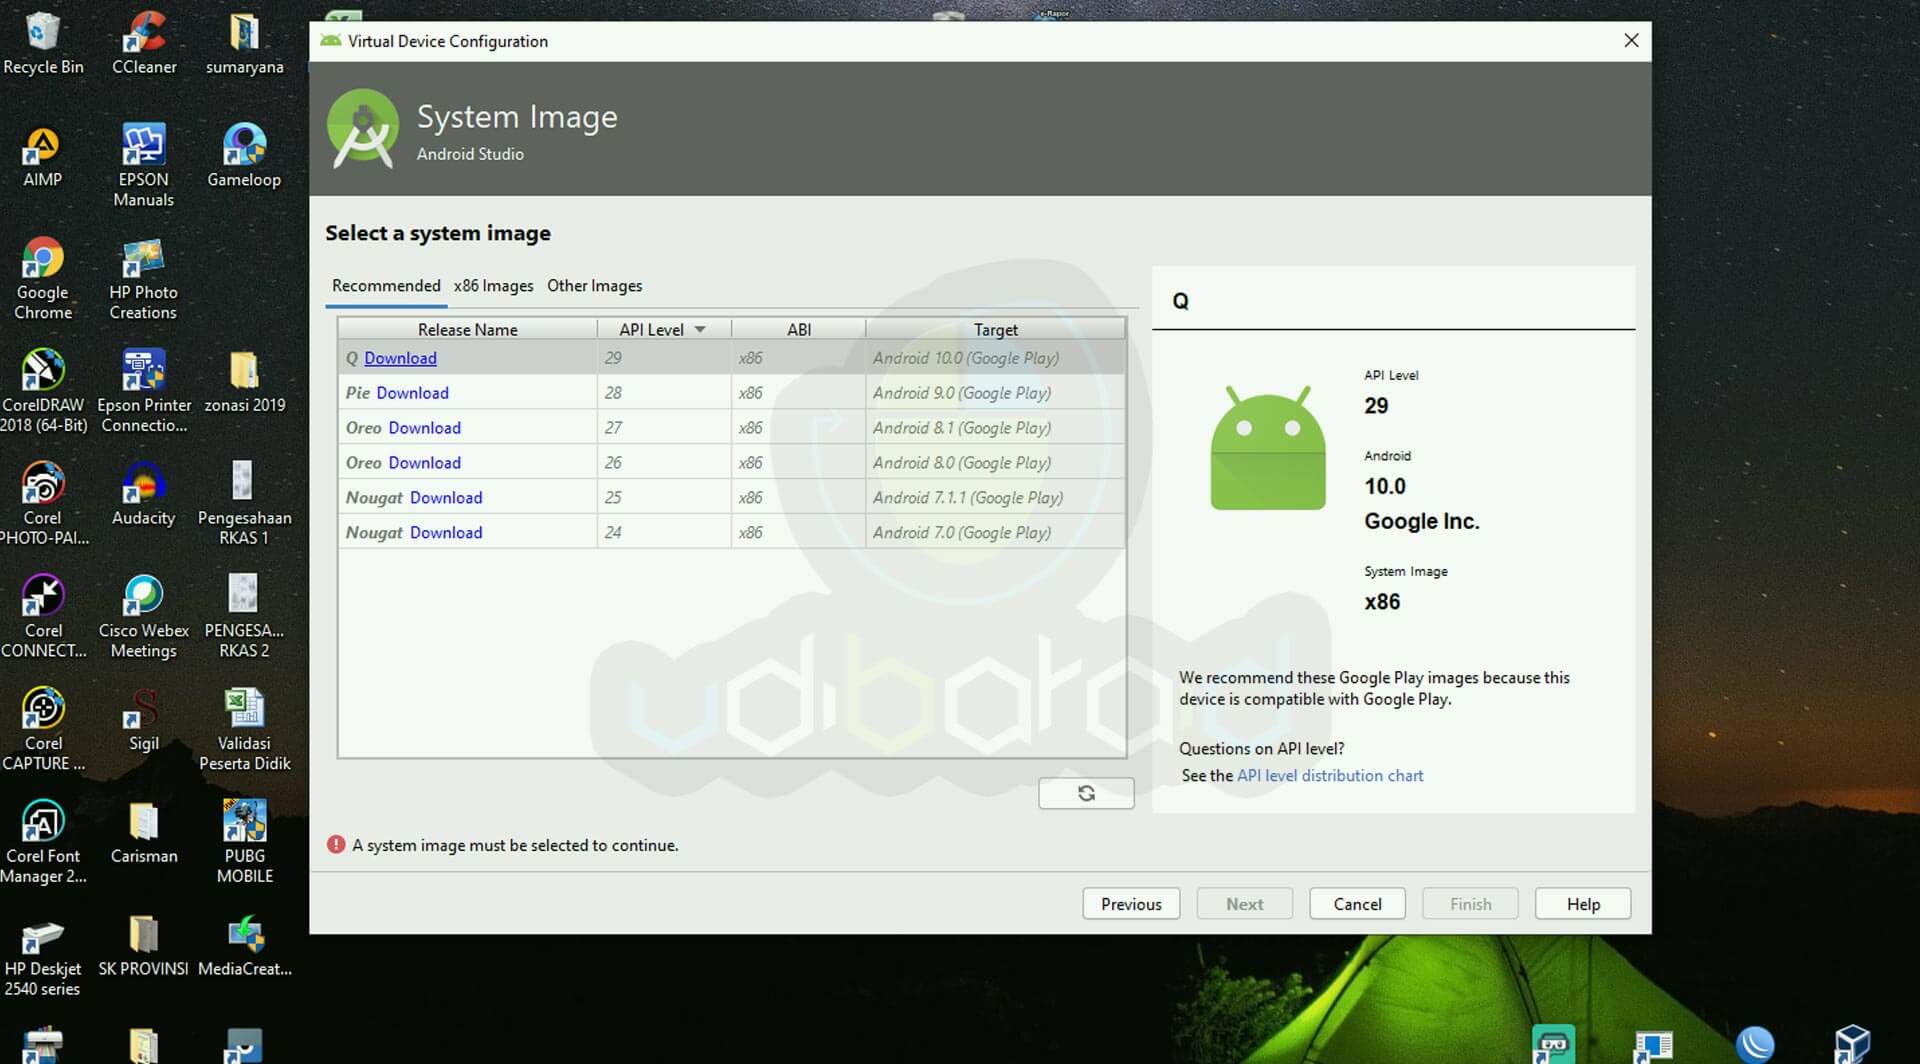 Cara Install Avd Manager Di Android Studio Udibaraid